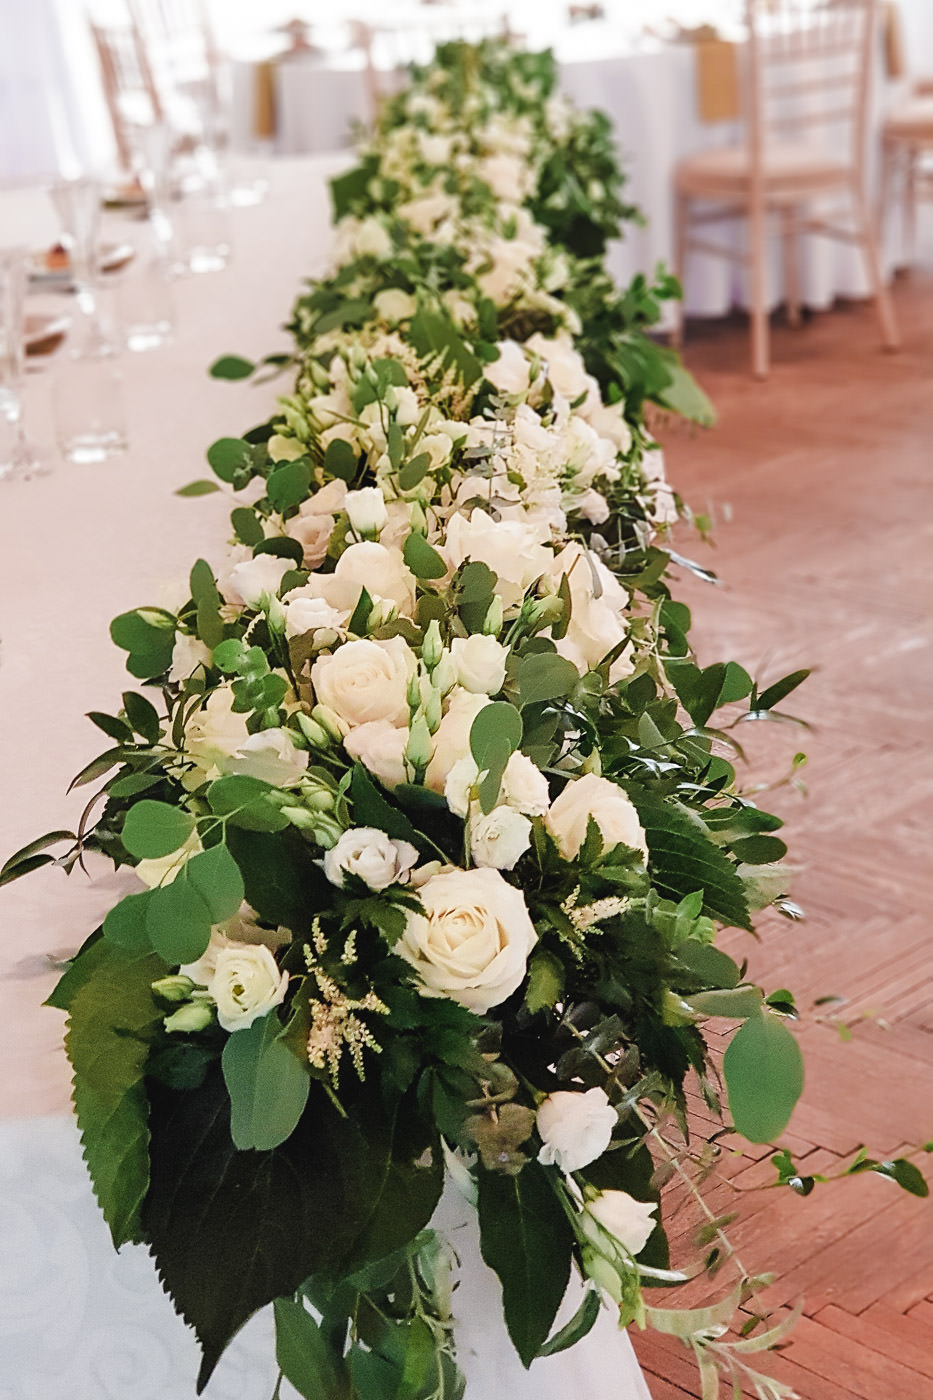 Susan&Sis decor svadobna vyzdoba – dekorovanie- white&green, greenery svadobna vyzdoba, bielo zelena svadba